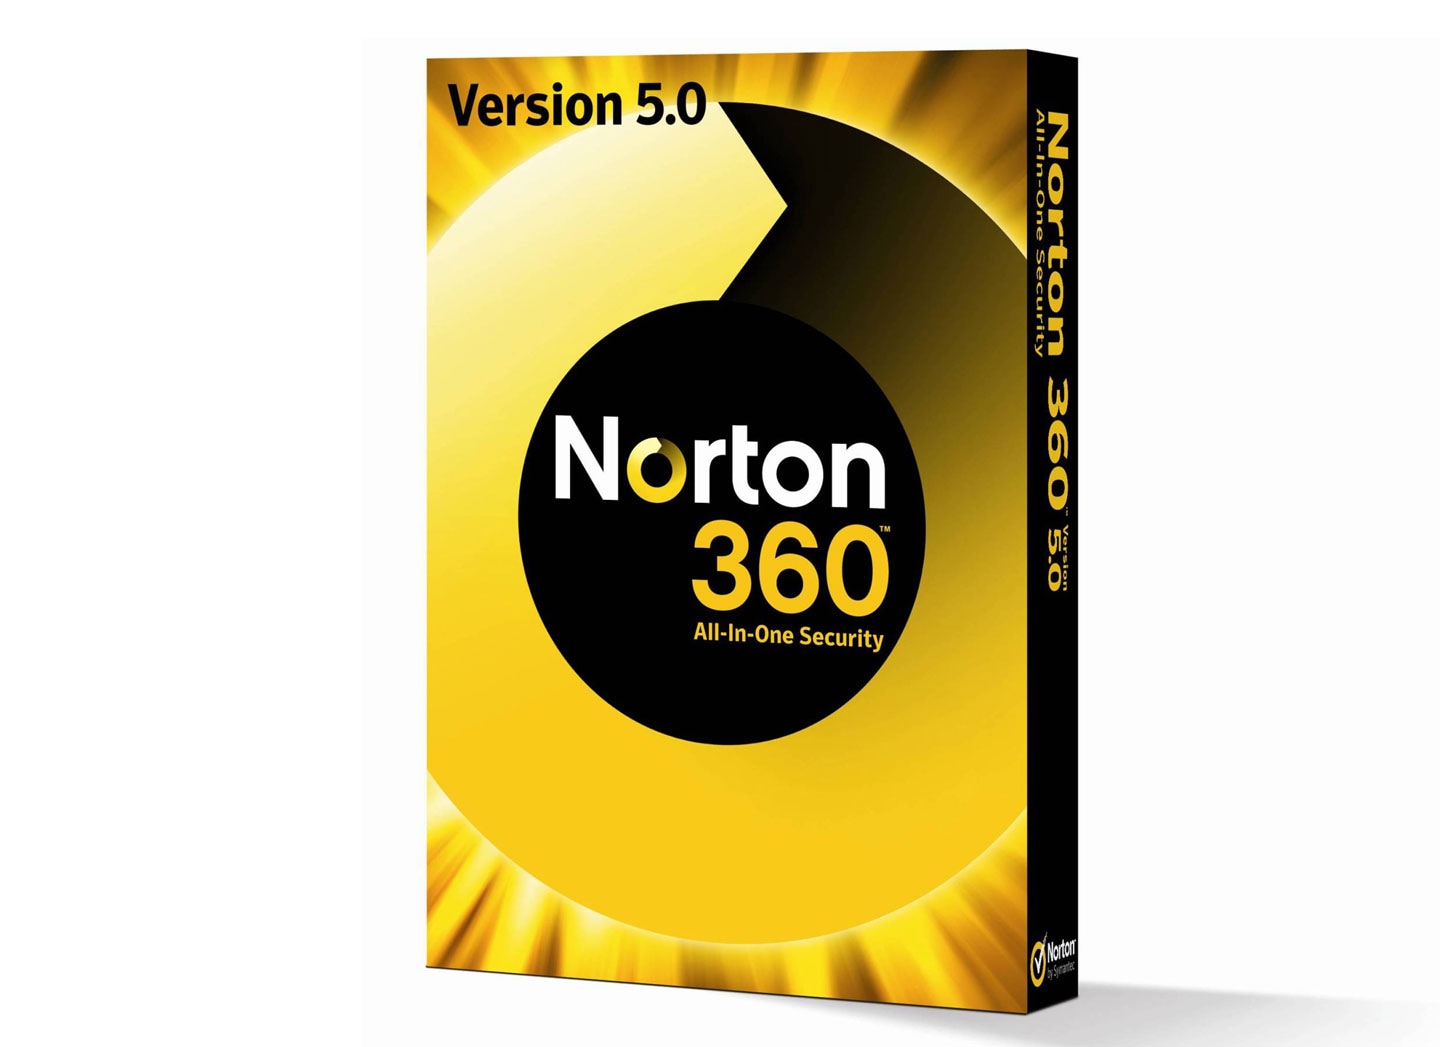 norton 360 sign in